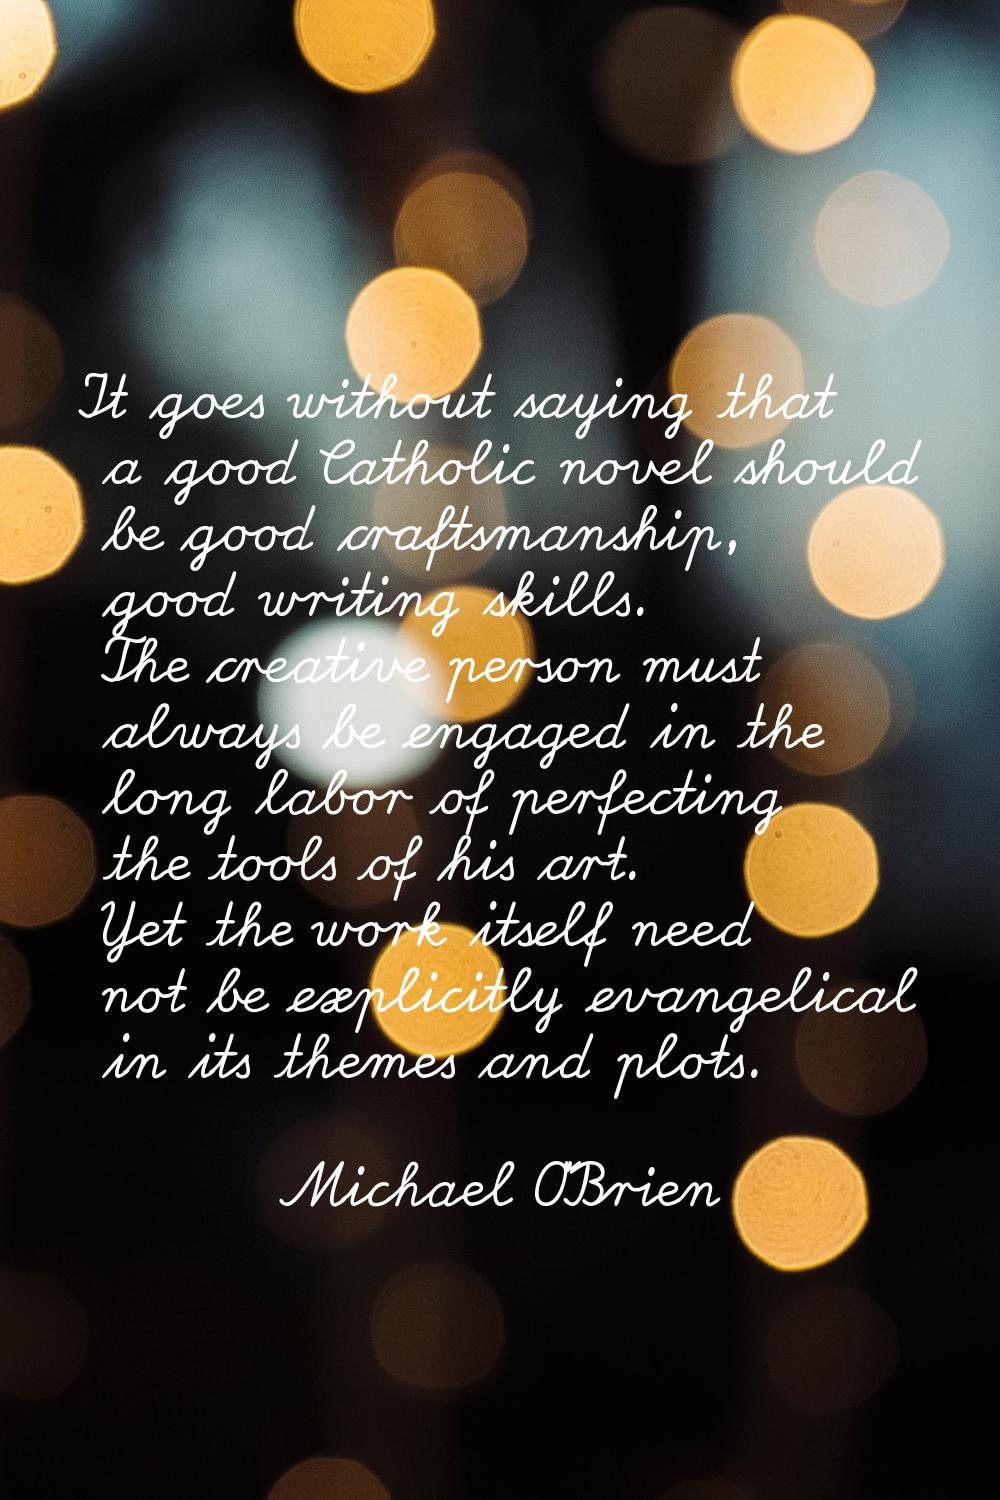 It goes without saying that a good Catholic novel should be good craftsmanship, good writing skills